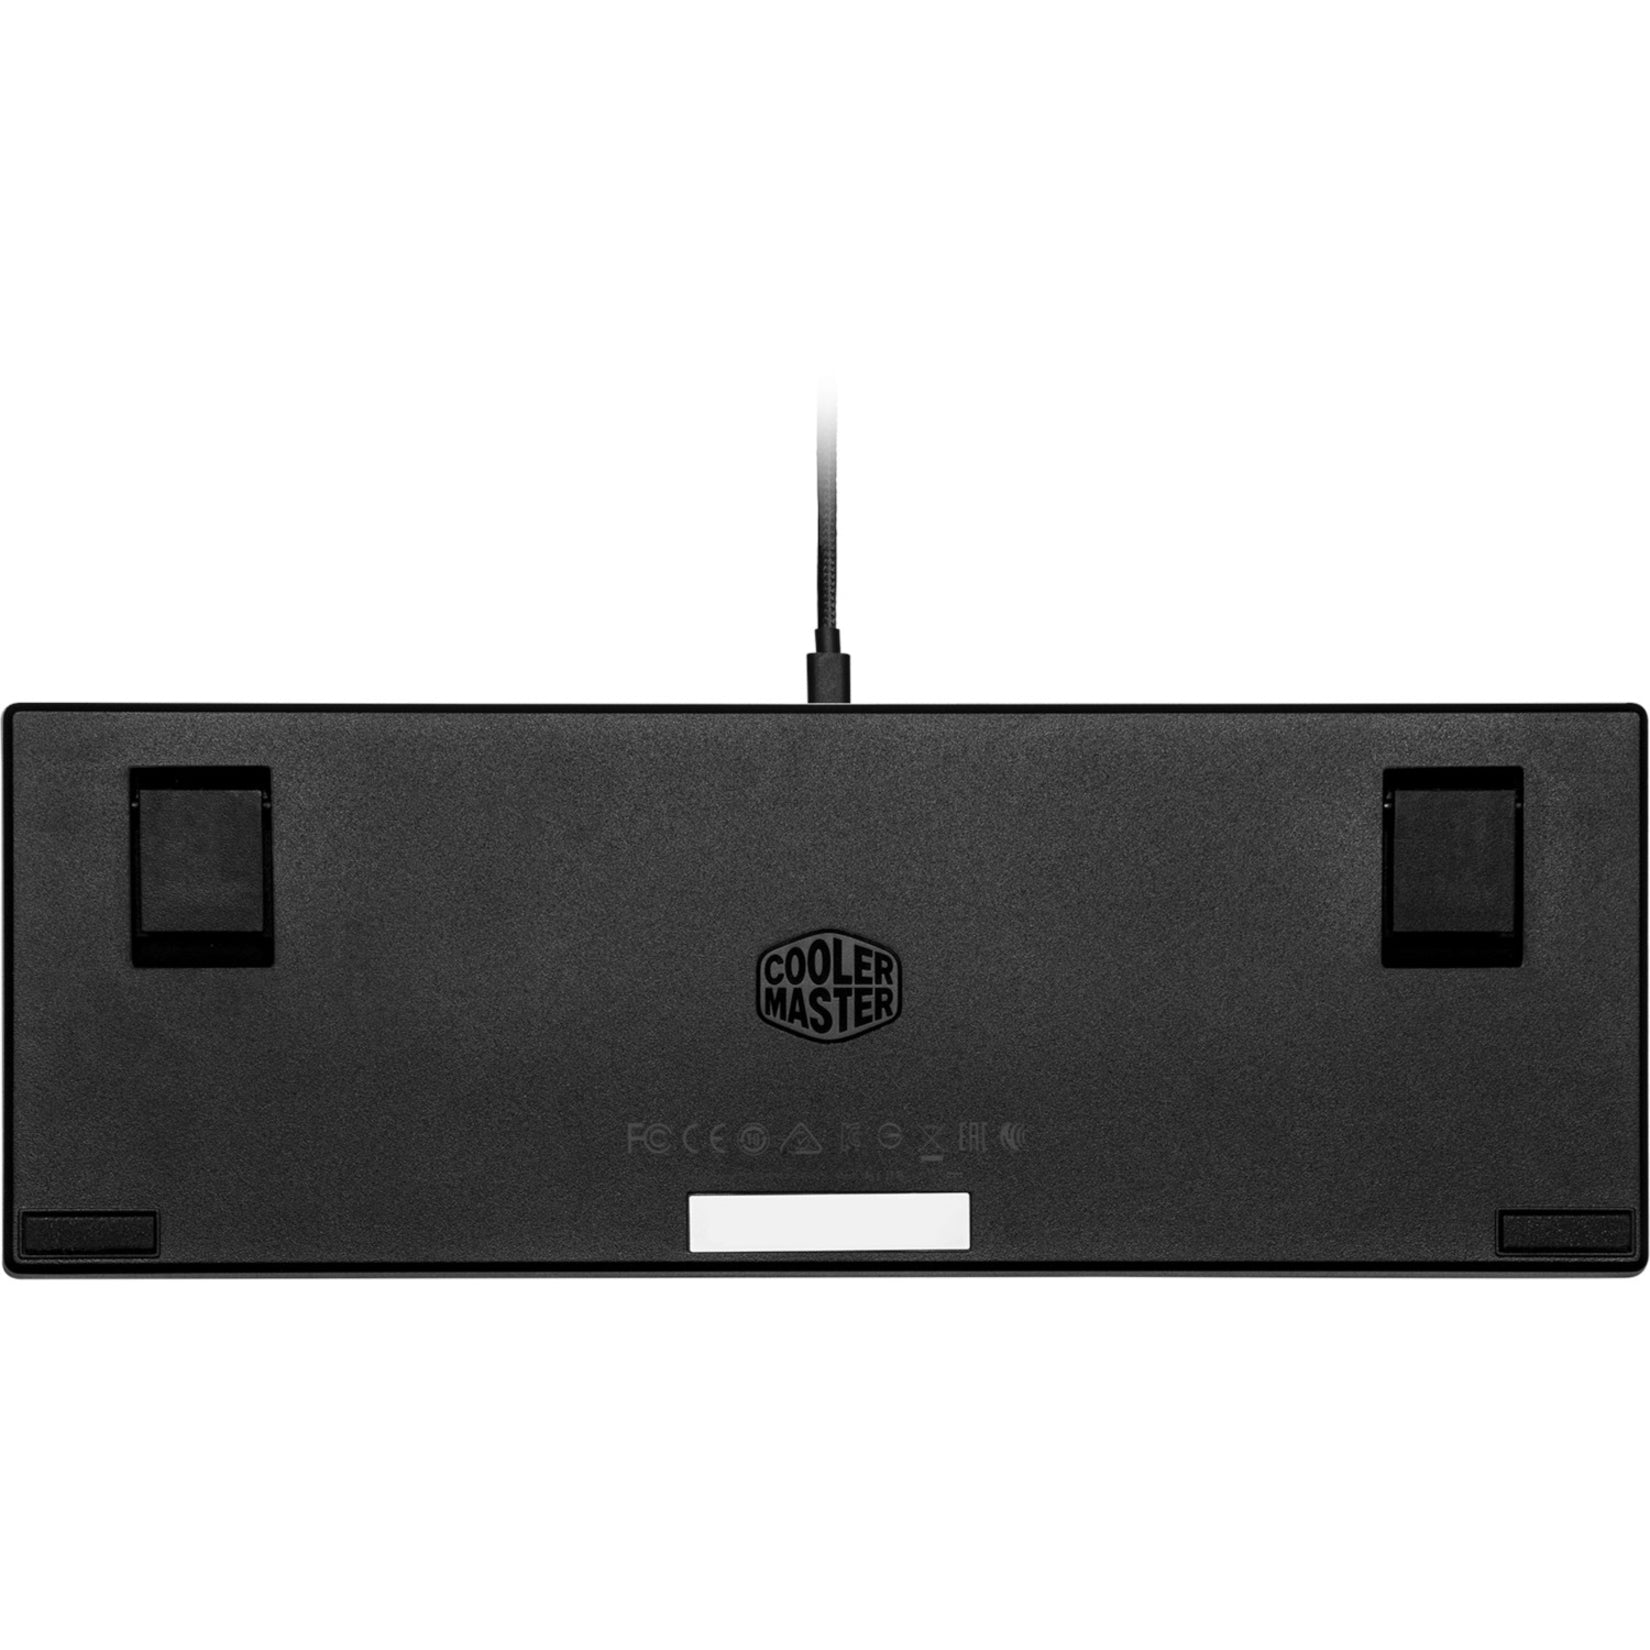 Cooler Master SK-620-GKTR1-US SK620 Gaming Mouse, RGB LED Backlight, Mechanical Keyswitch Technology